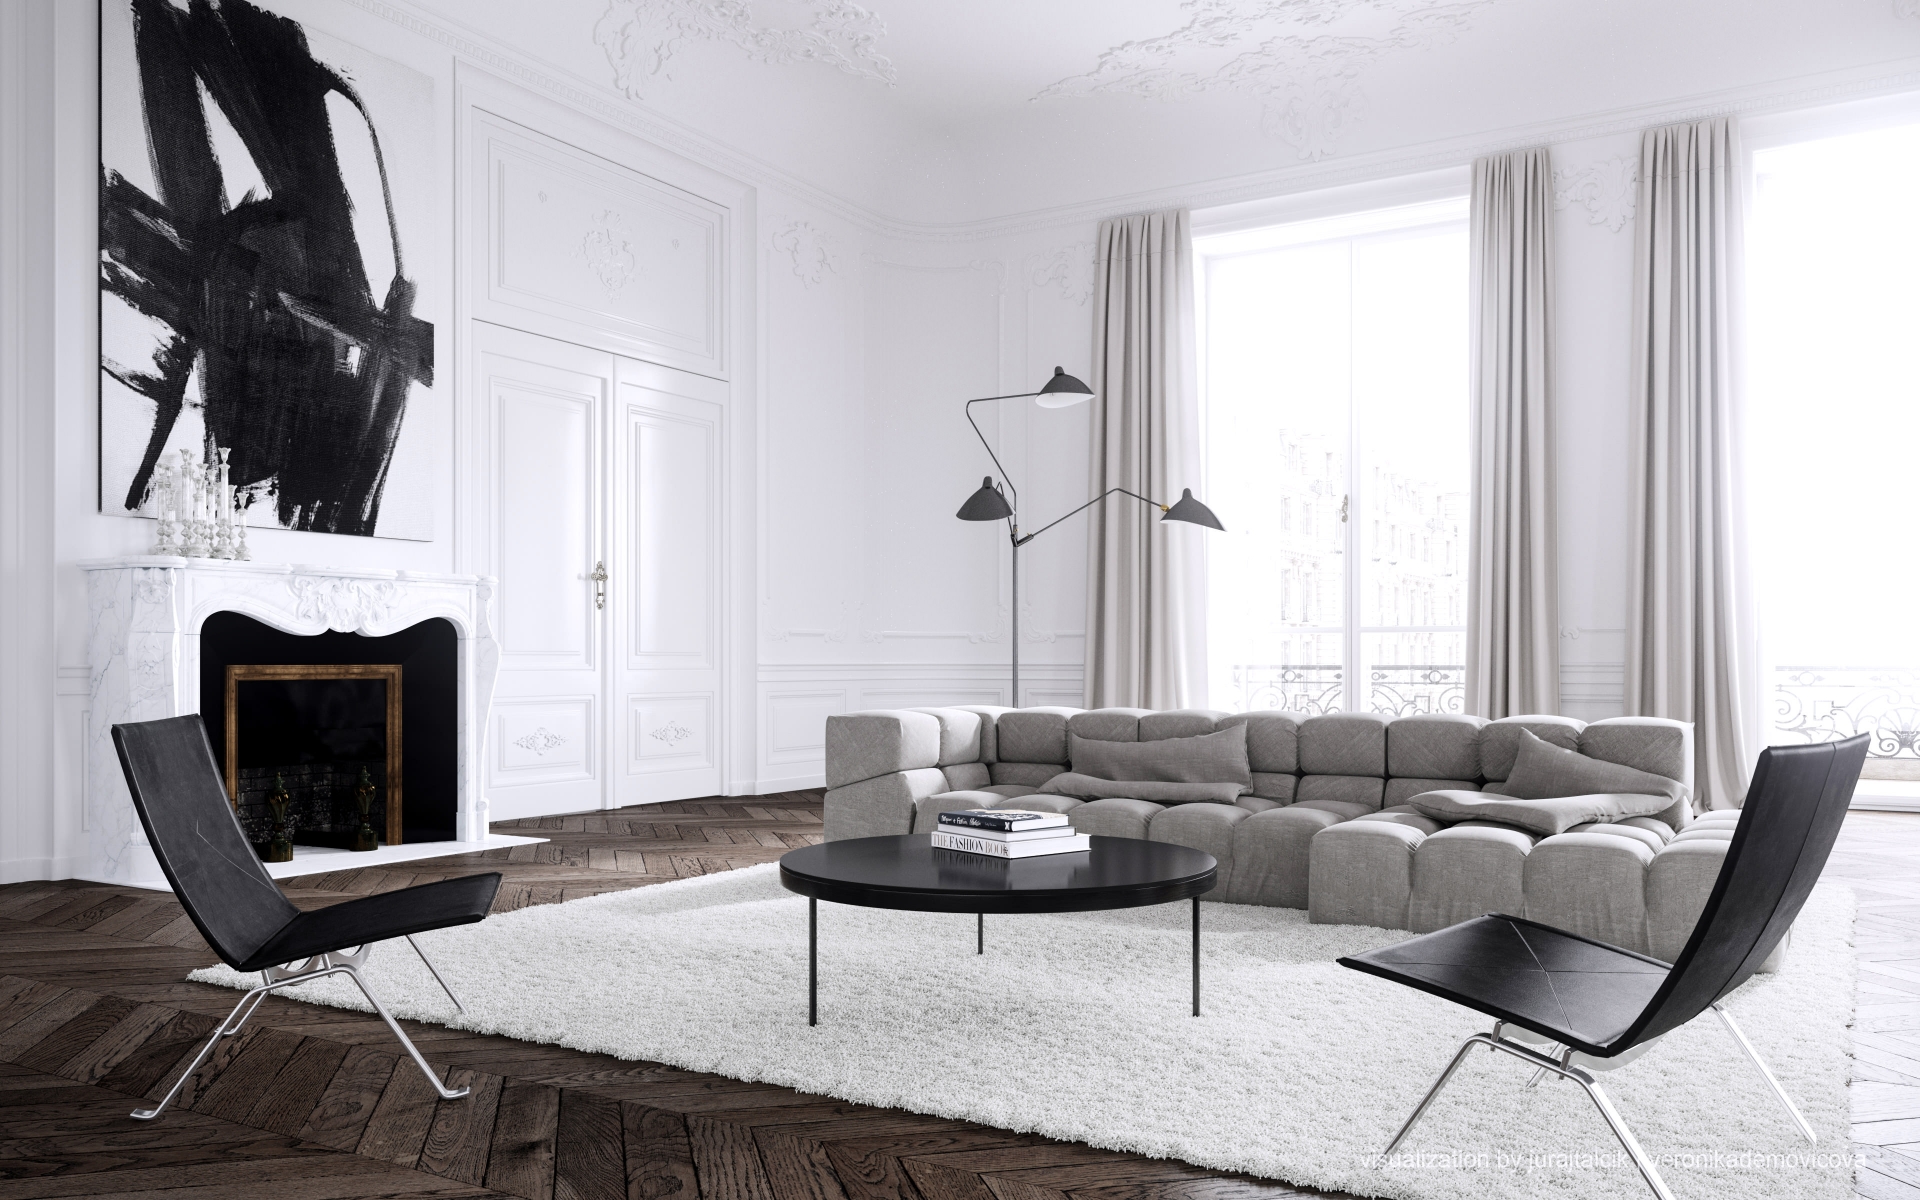 Nhà thiết kế nội thất Jessica Vedel thiết kế căn hộ tại Paris với kiến trúc cổ điển kết hợp nội thất hiện đại. Bức tranh trừu tượng phía trên lò sưởi được tạo ra bởi tông màu trắng - đen chủ đạo của phòng khách khiến chúng trở nên nhất quán, đẹp mắt.